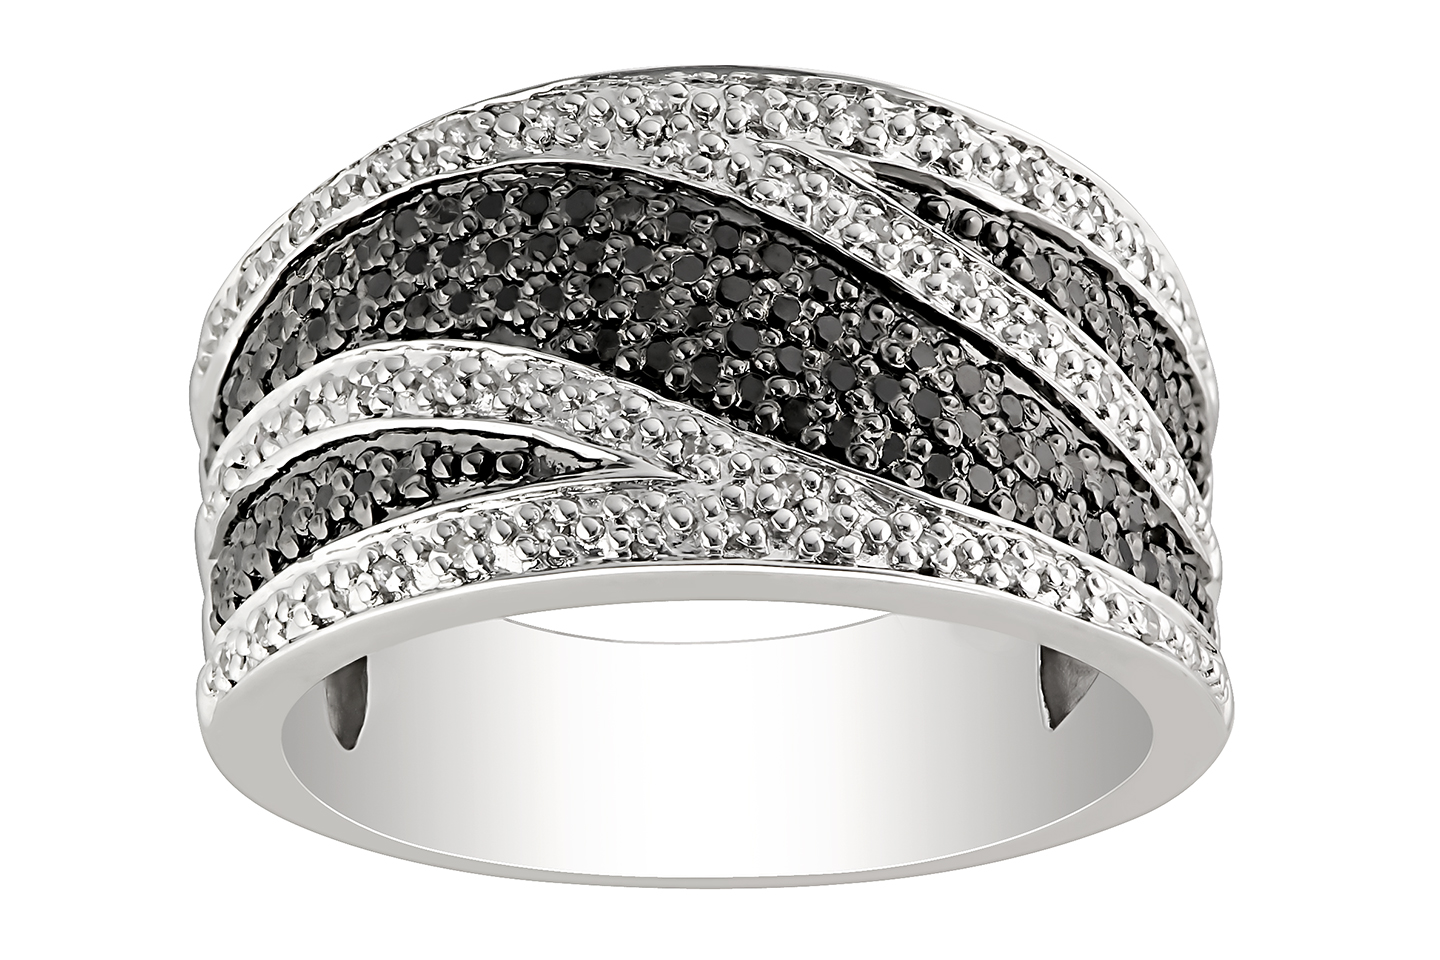 Diamond Jewelry Wallpaperwedding Rings Tags Black White Diamond